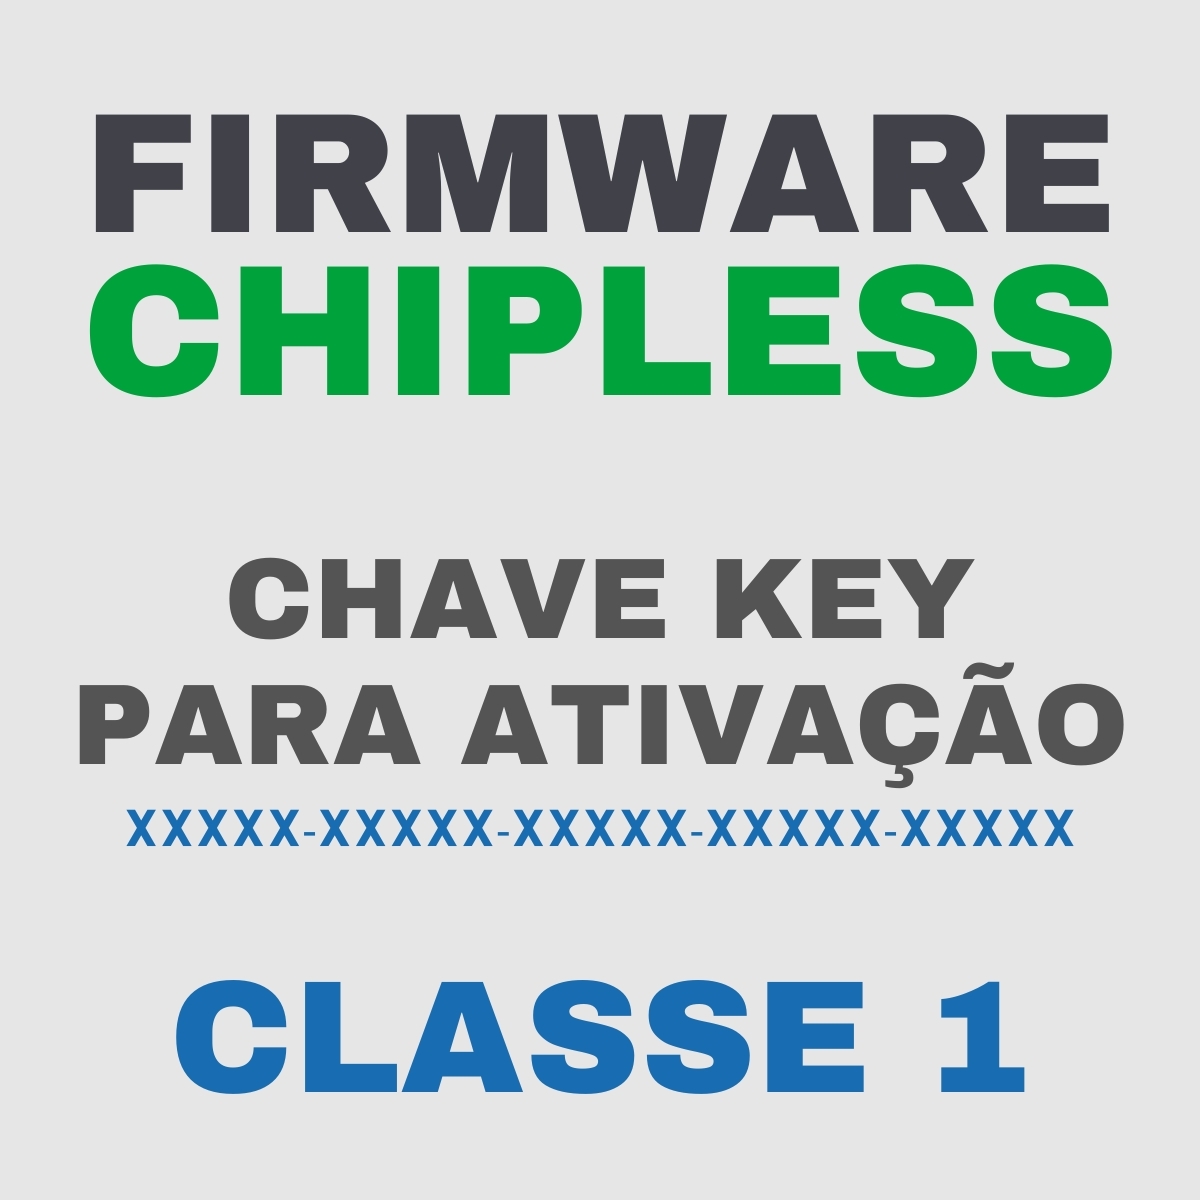 Chave Key de Ativação Firmware ChipLess para Impressora Epson - Classe 1